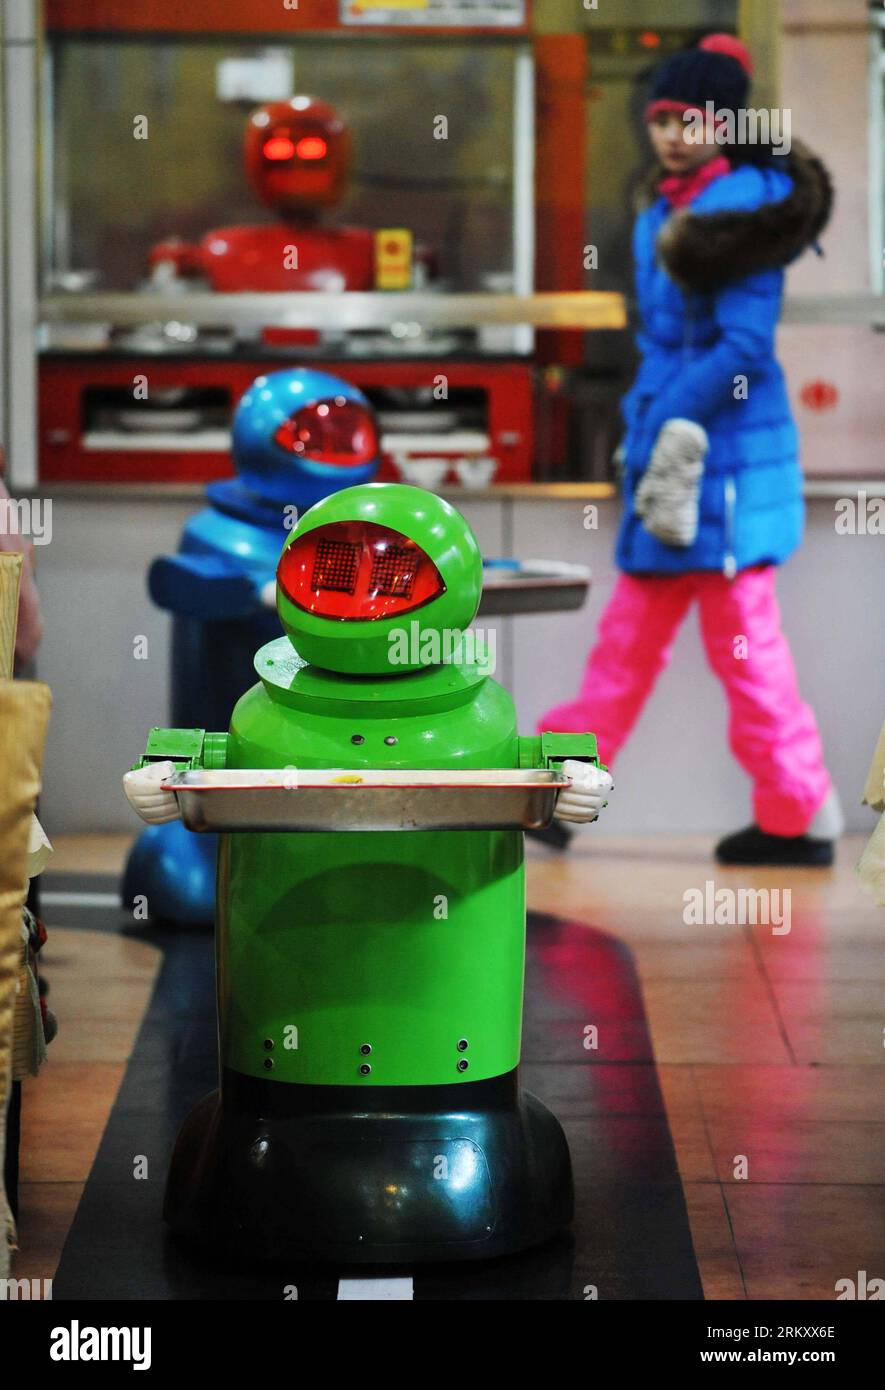 Bildnummer: 59103144 Datum: 18.01.2013 Copyright: imago/Xinhua (130118) -- HARBIN, 18 gennaio 2013 (Xinhua) -- i robot servono piatti in un ristorante a tema robot a Harbin, capitale della provincia di Heilongjiang della Cina nord-orientale, 18 gennaio 2013. Aperto nel giugno del 2012, il ristorante ha guadagnato fama utilizzando un totale di 20 robot per cucinare i pasti, consegnare i piatti e salutare i clienti. (Xinhua/Wang Jianwei) (zc) RISTORANTE A TEMA CHINA-HEILONGJIANG-HARBIN-ROBOT (CN) PUBLICATIONxNOTxINxCHN Gesellschaft Gastronomie Erlebnisgastronomie kurios Komik Roboter Kellner Fotostory x0x xds 2013 Hoch 59103144 Data Foto Stock